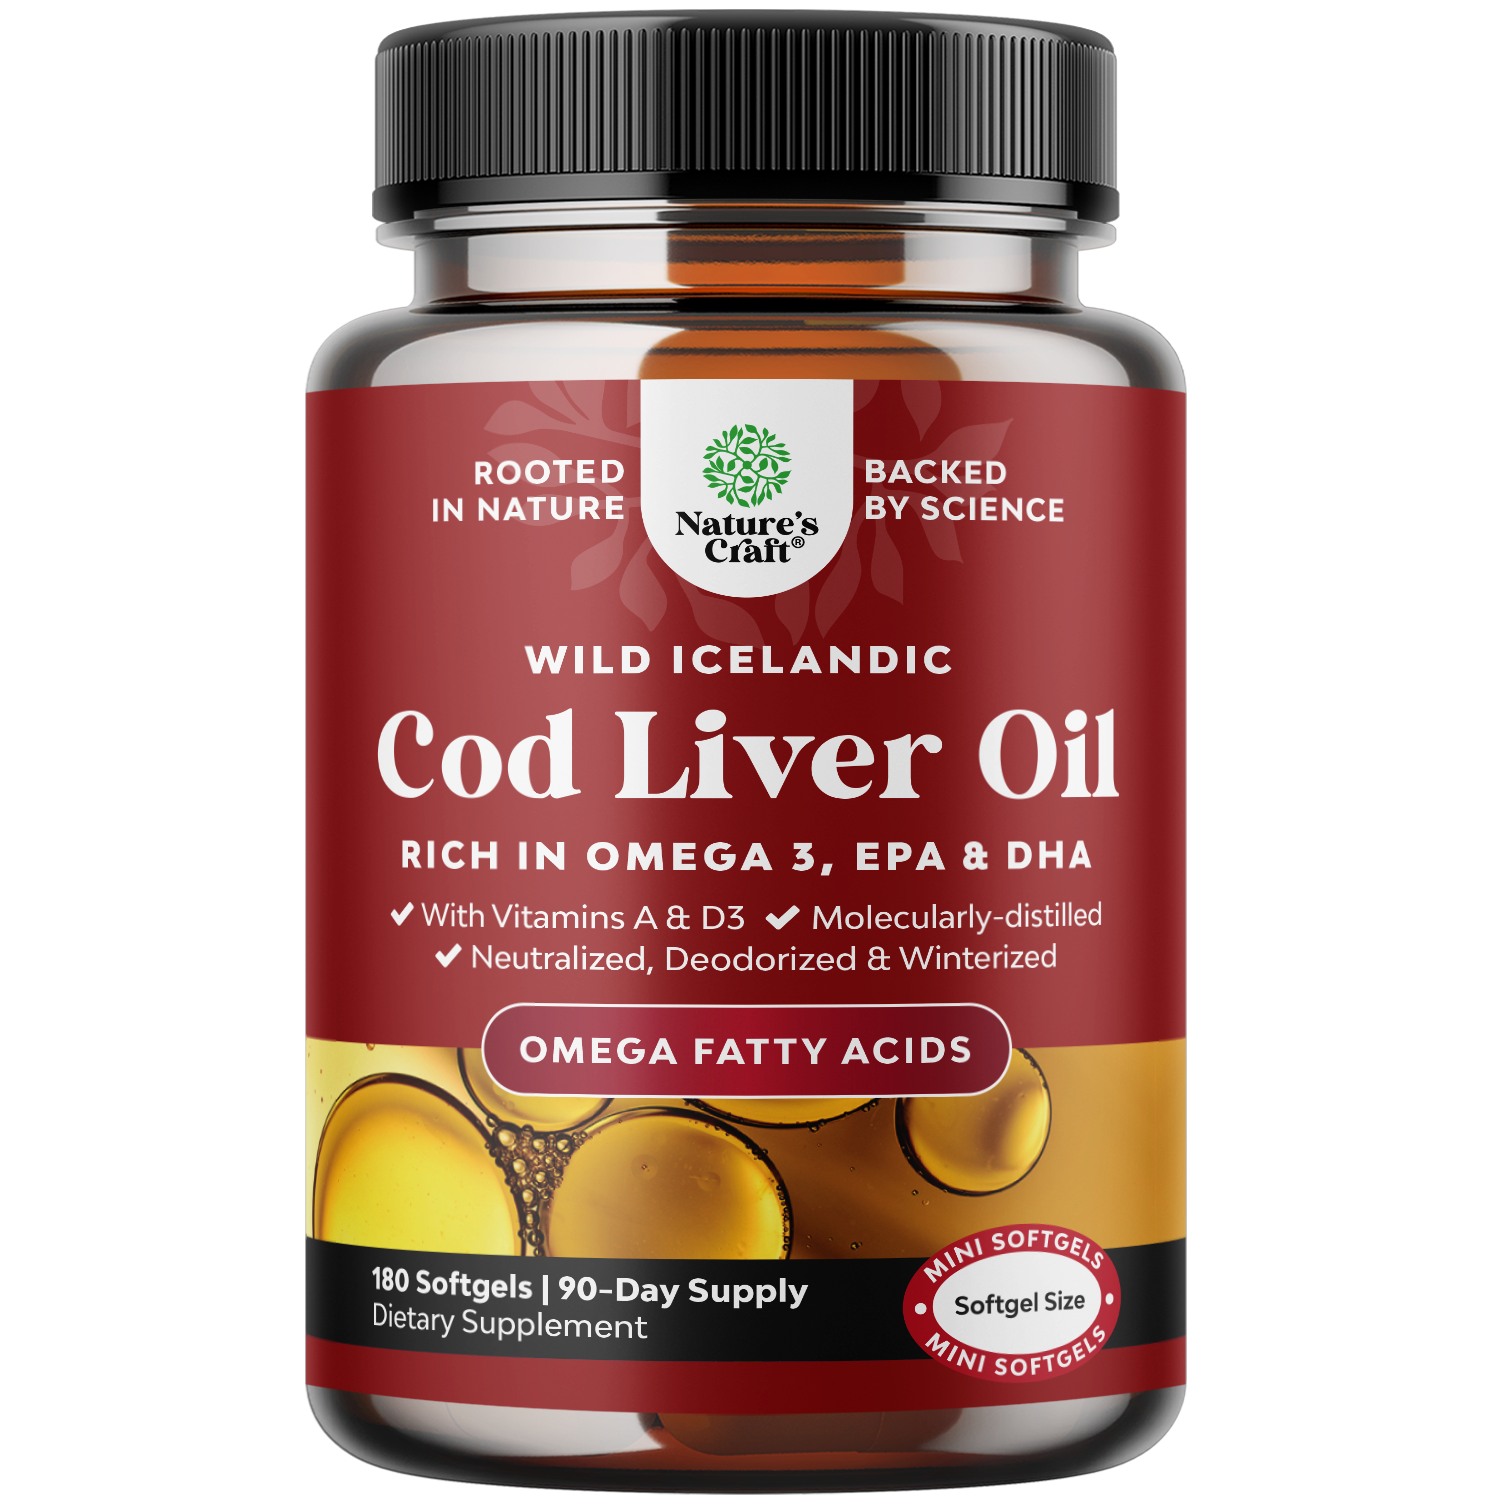 Cod Liver Oil 1000mg per serving - 180 Softgels